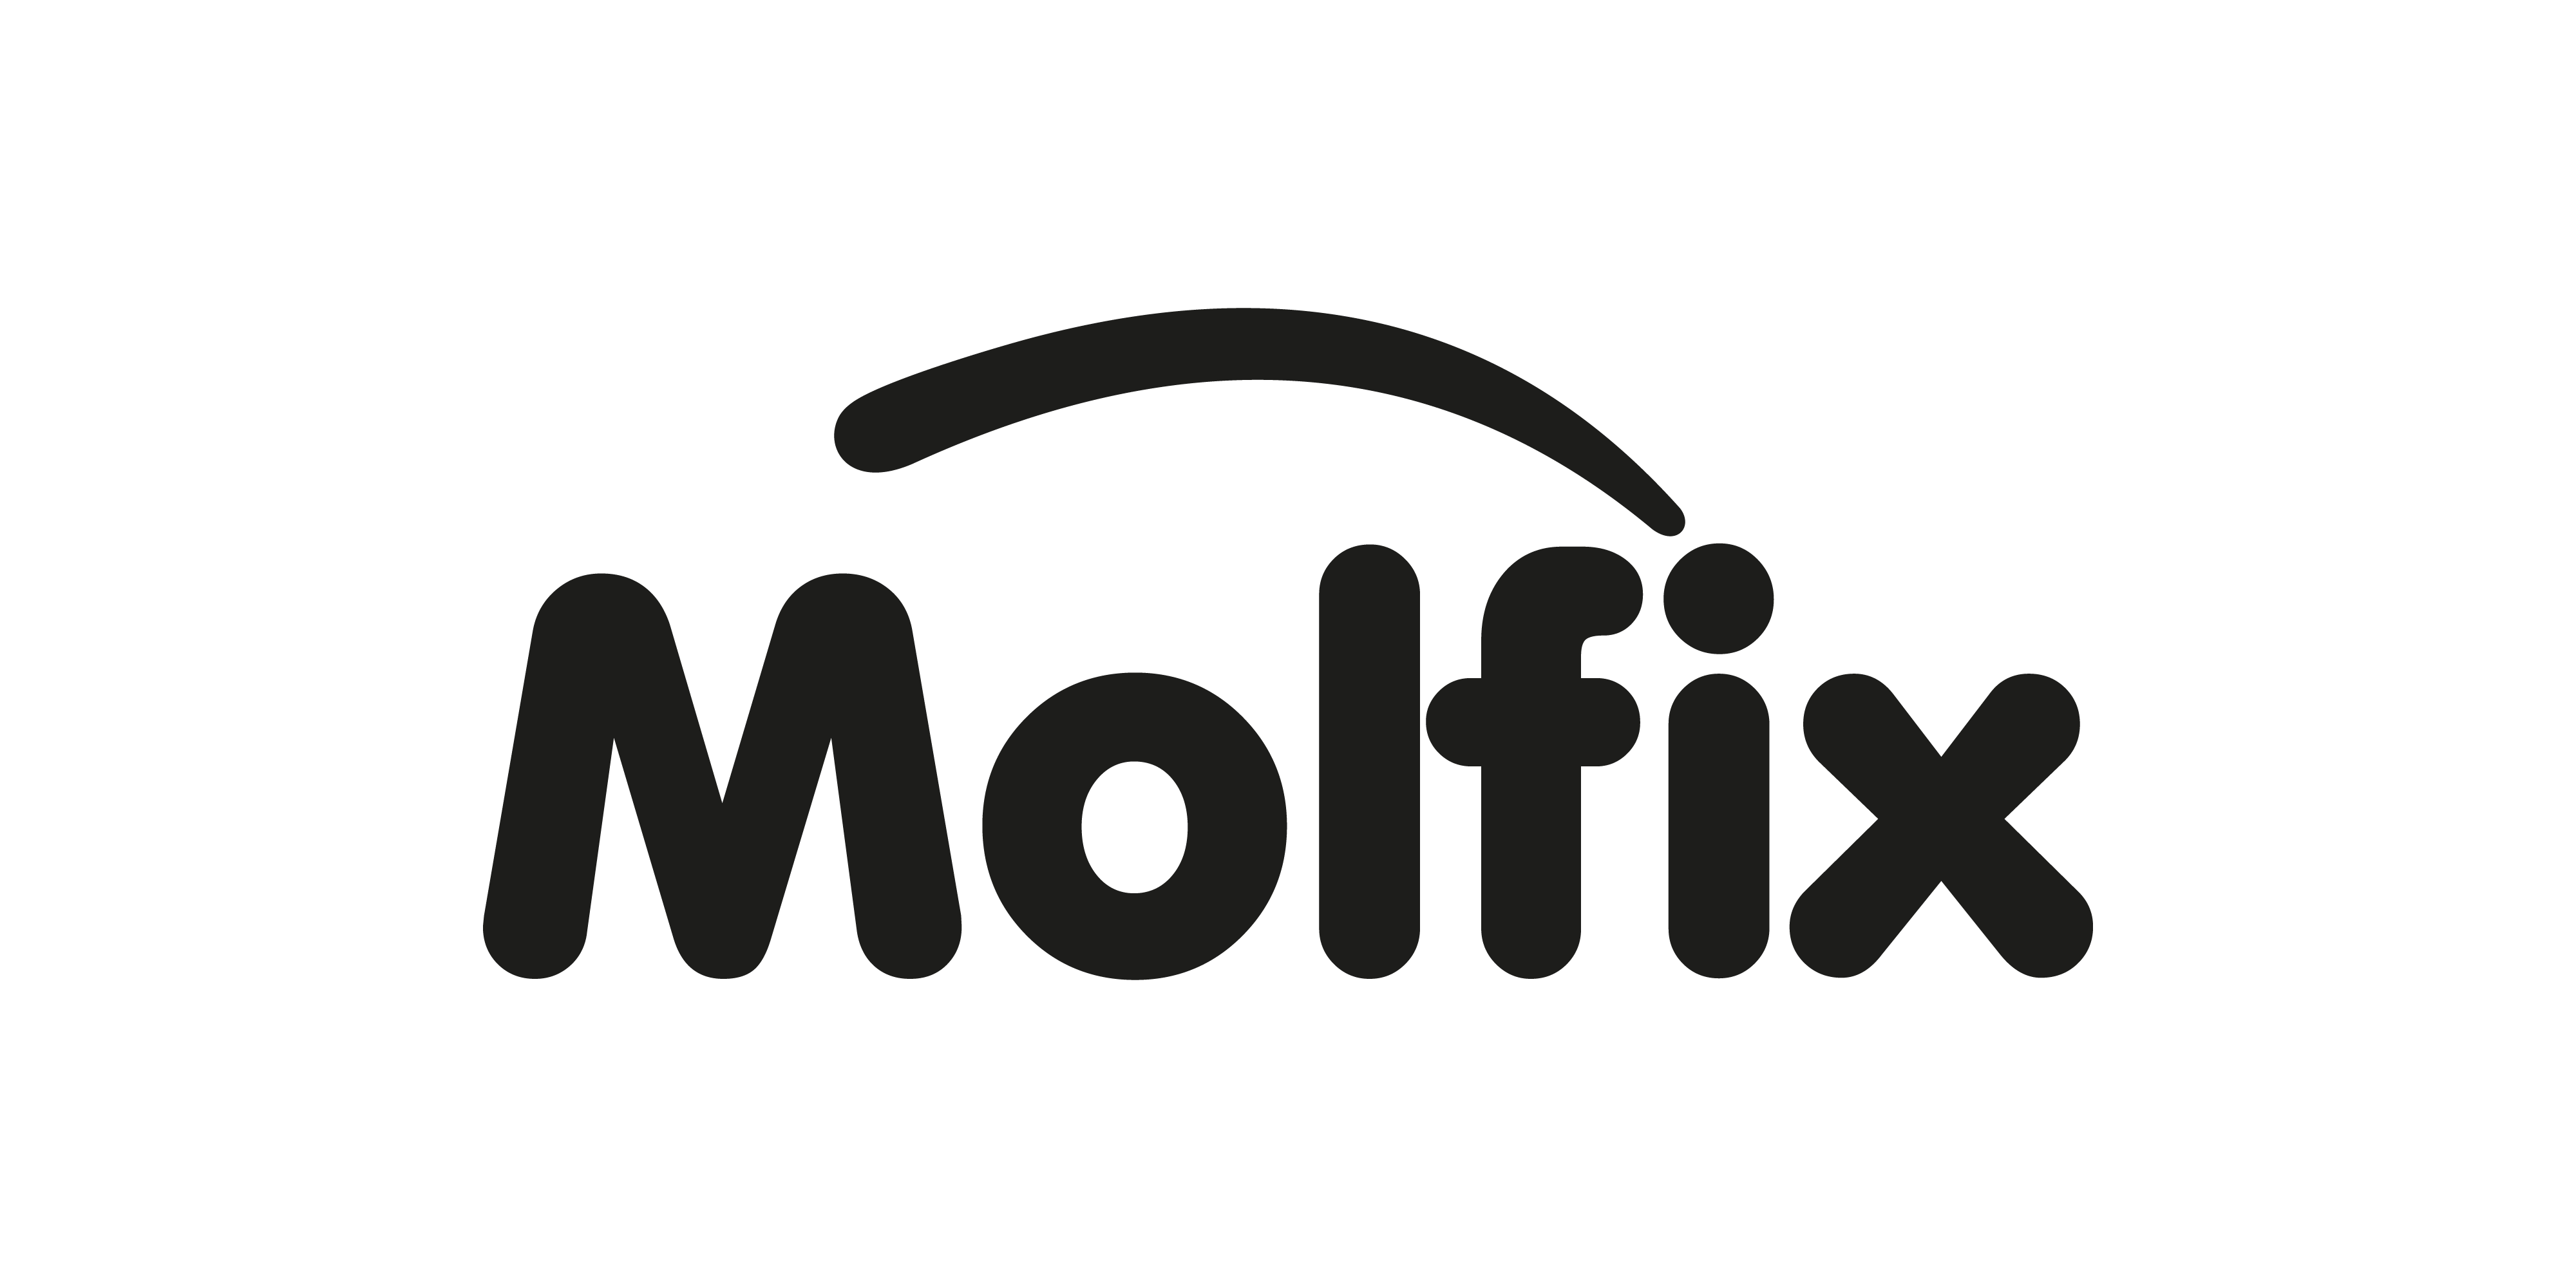 molfix